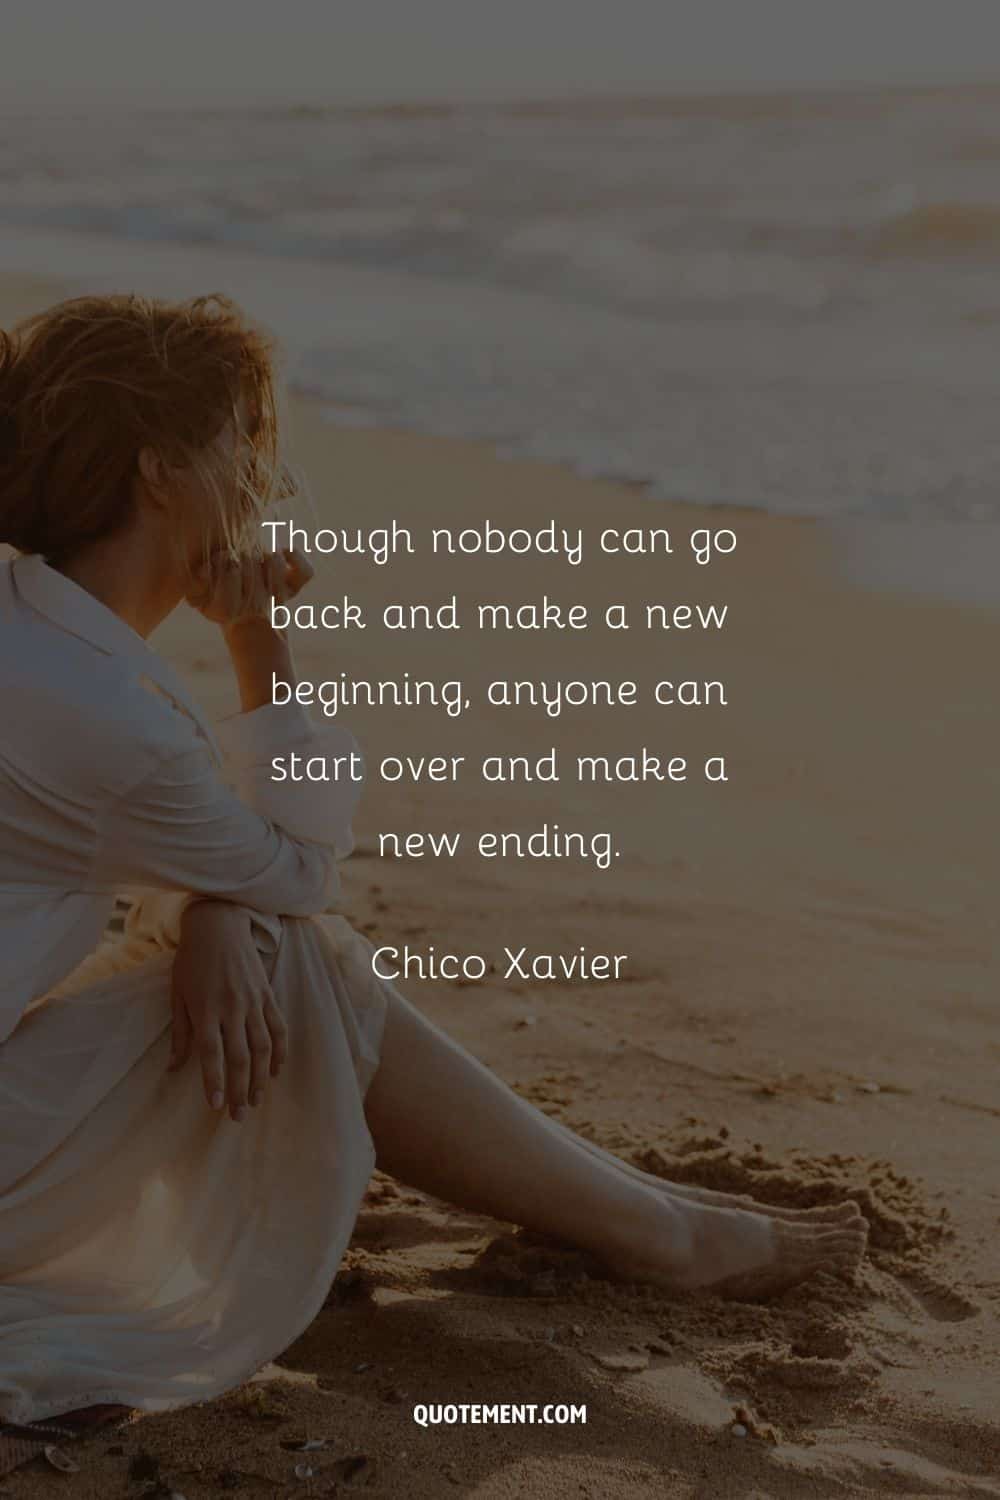 "Aunque nadie puede volver atrás y hacer un nuevo comienzo, cualquiera puede empezar de nuevo y hacer un nuevo final". - Chico Xavier